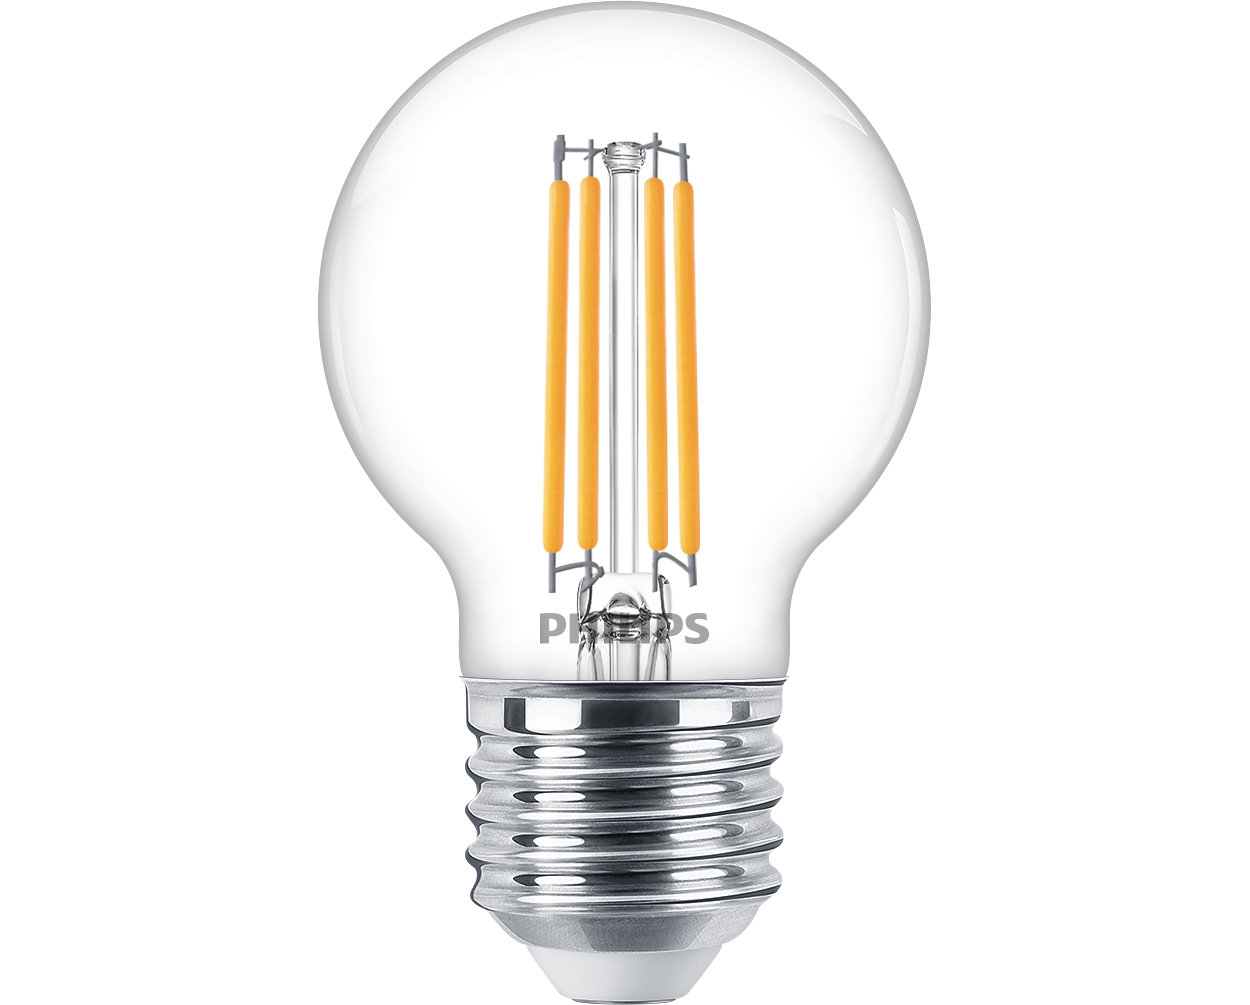 Lámparas LED clásicas de filamento para iluminación decorativa